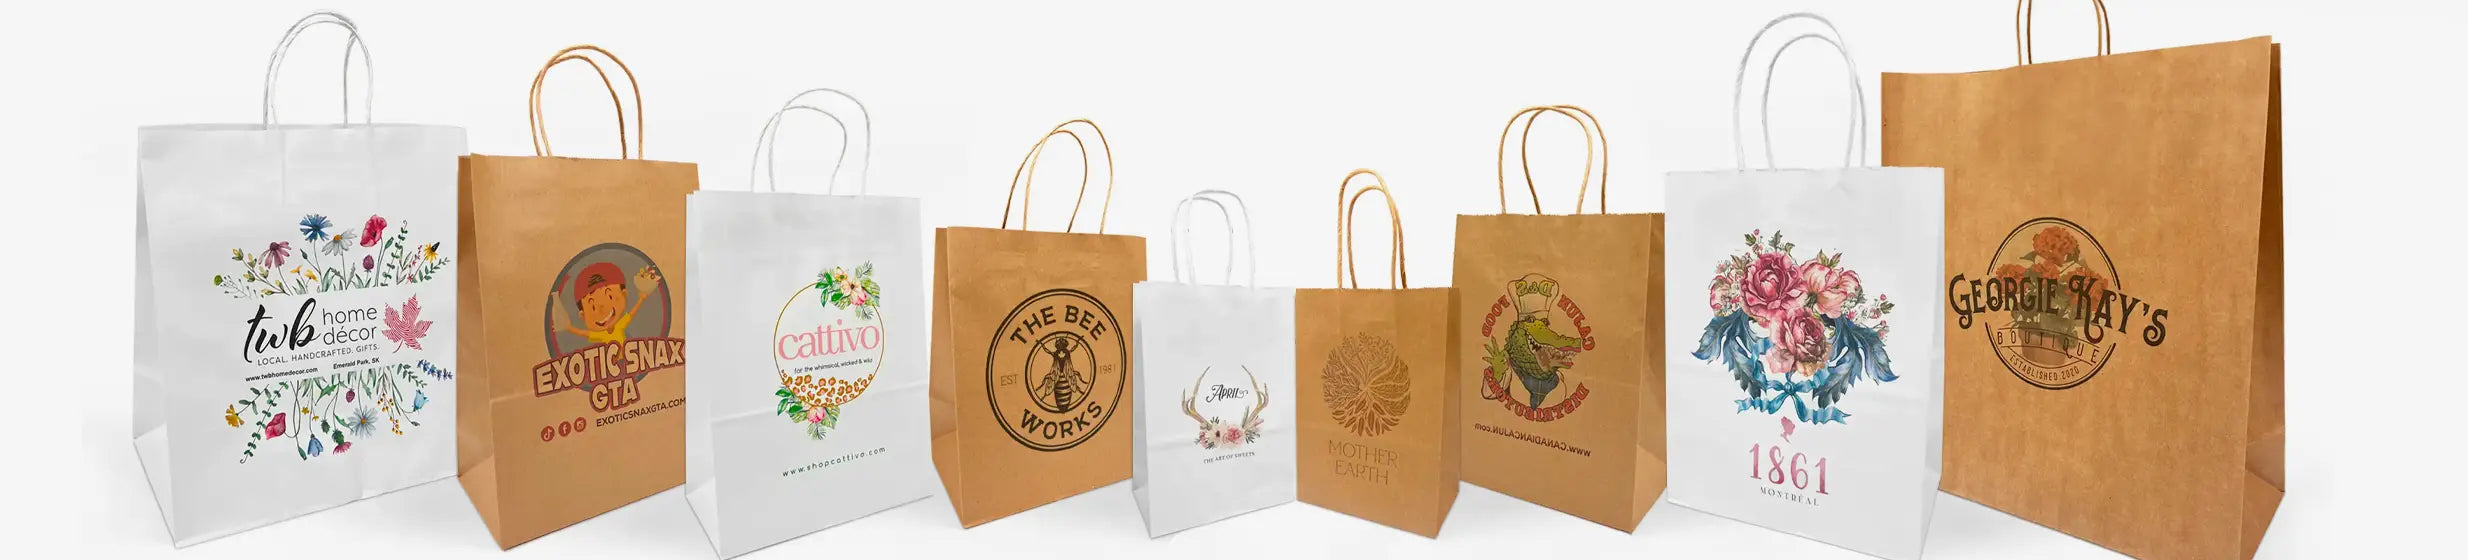 Load video: custom print bag custom paper bags